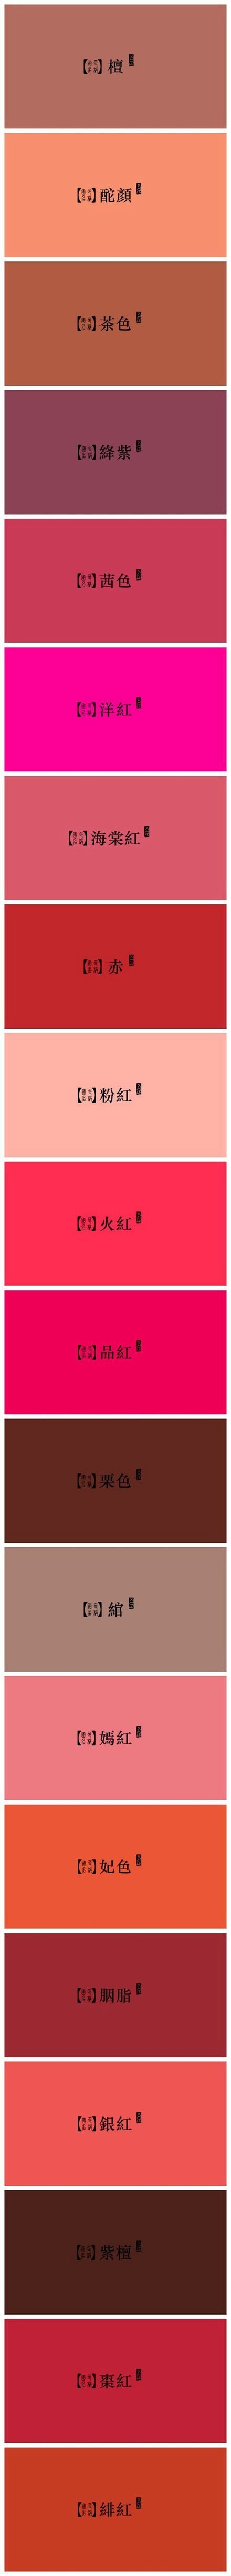 设计现场：【红色系】·中国传统色及命名